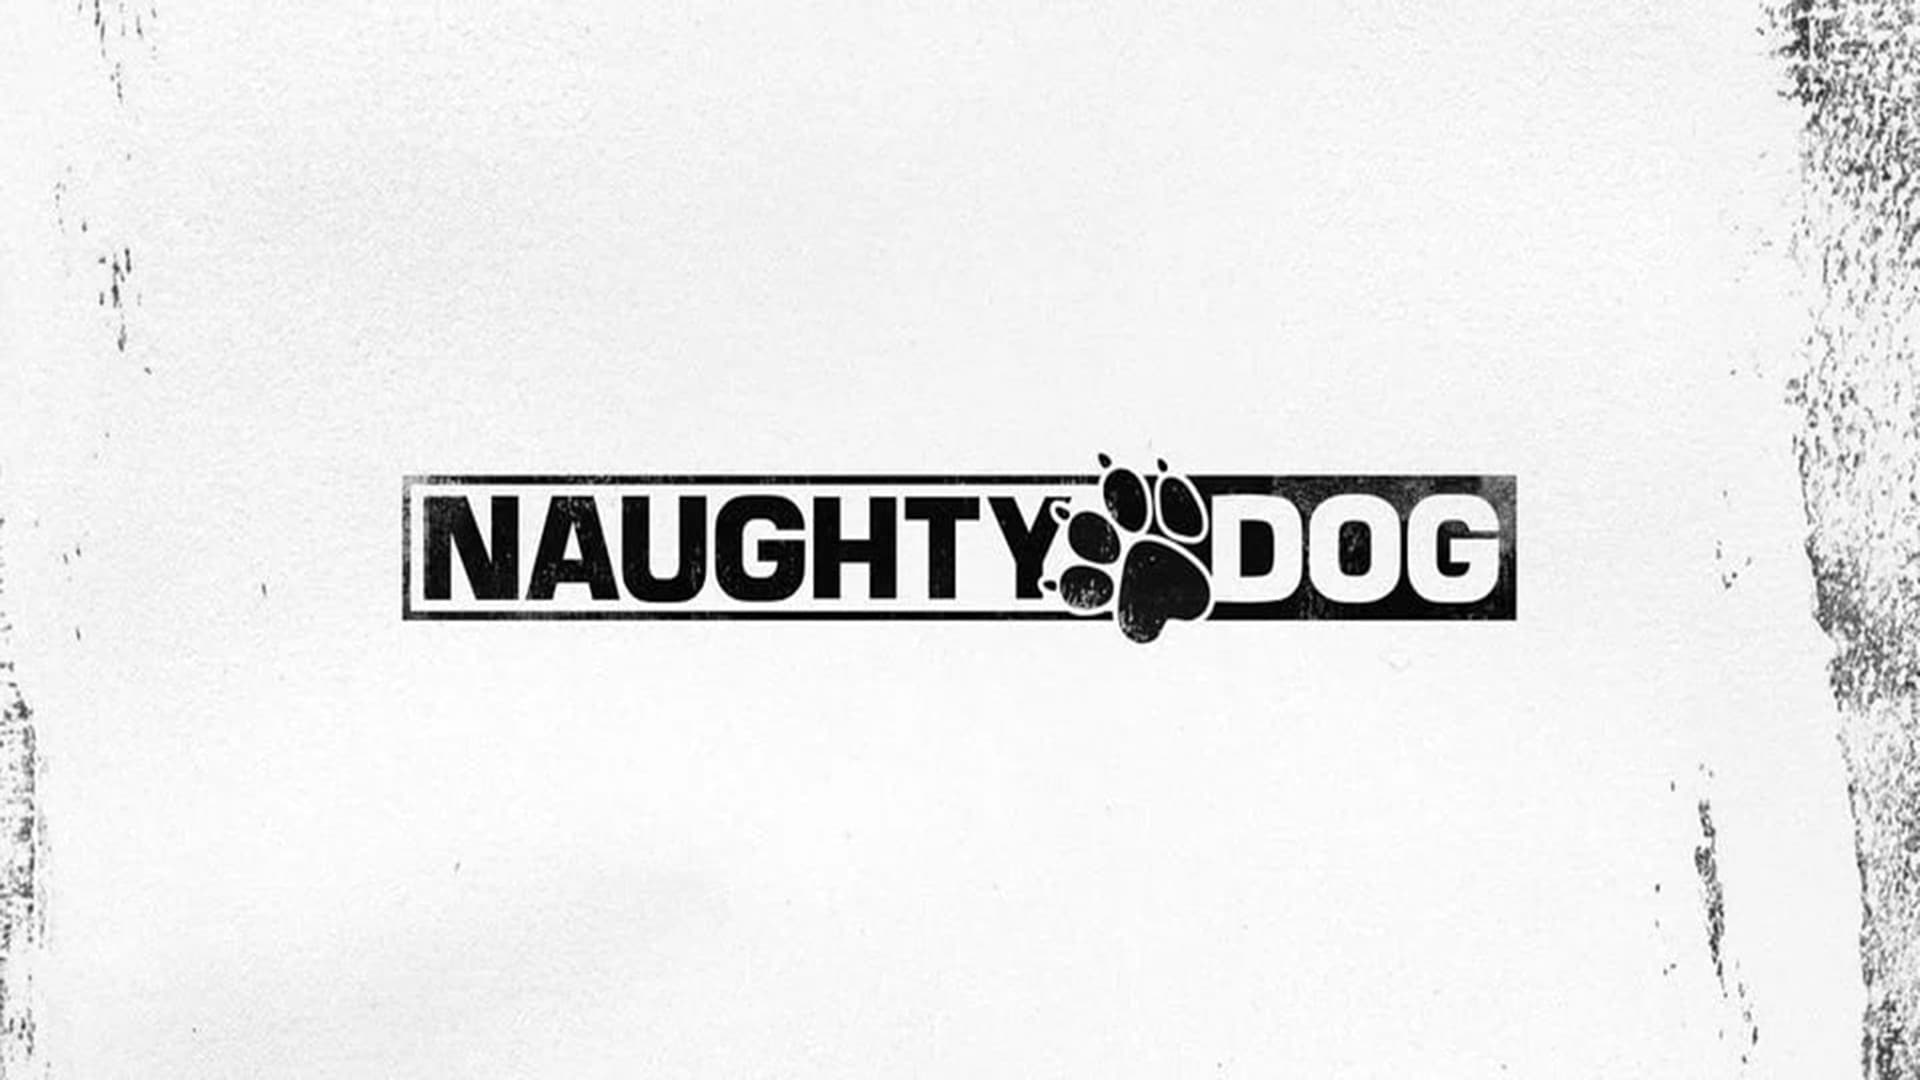 Una nueva filtración de Naughty Dog aparentemente revela detalles sobre los próximos proyectos, GamersRD